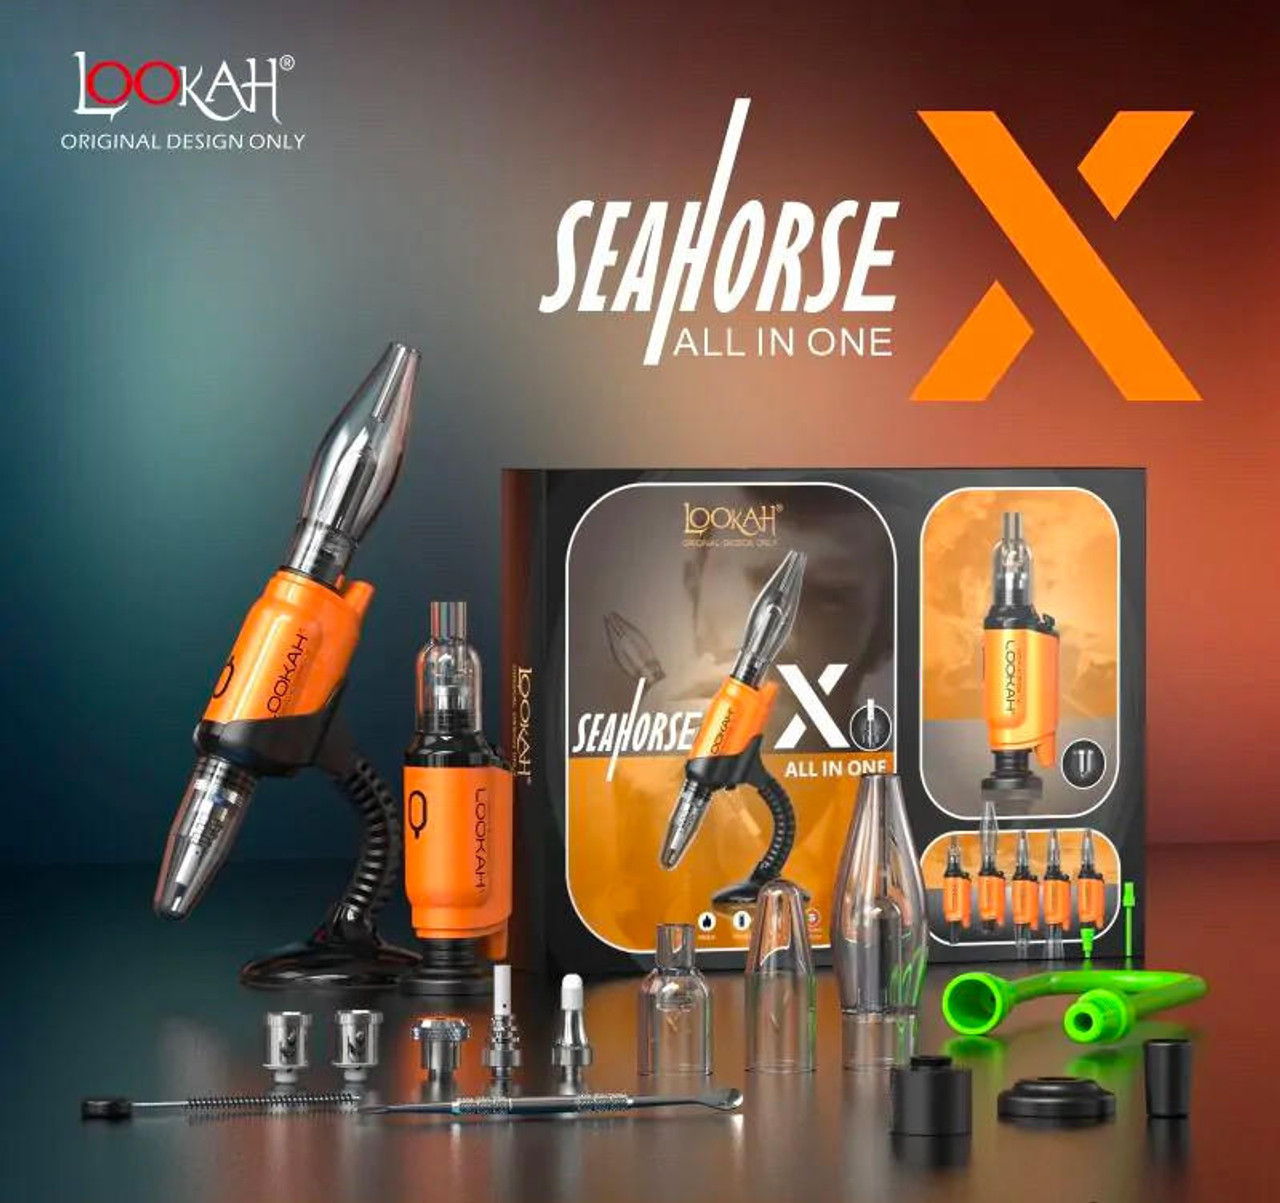 Lookah Seahorse Collector, Wax Portable Pen, E-Nectar Orange and X 3 E-Nail 1: in